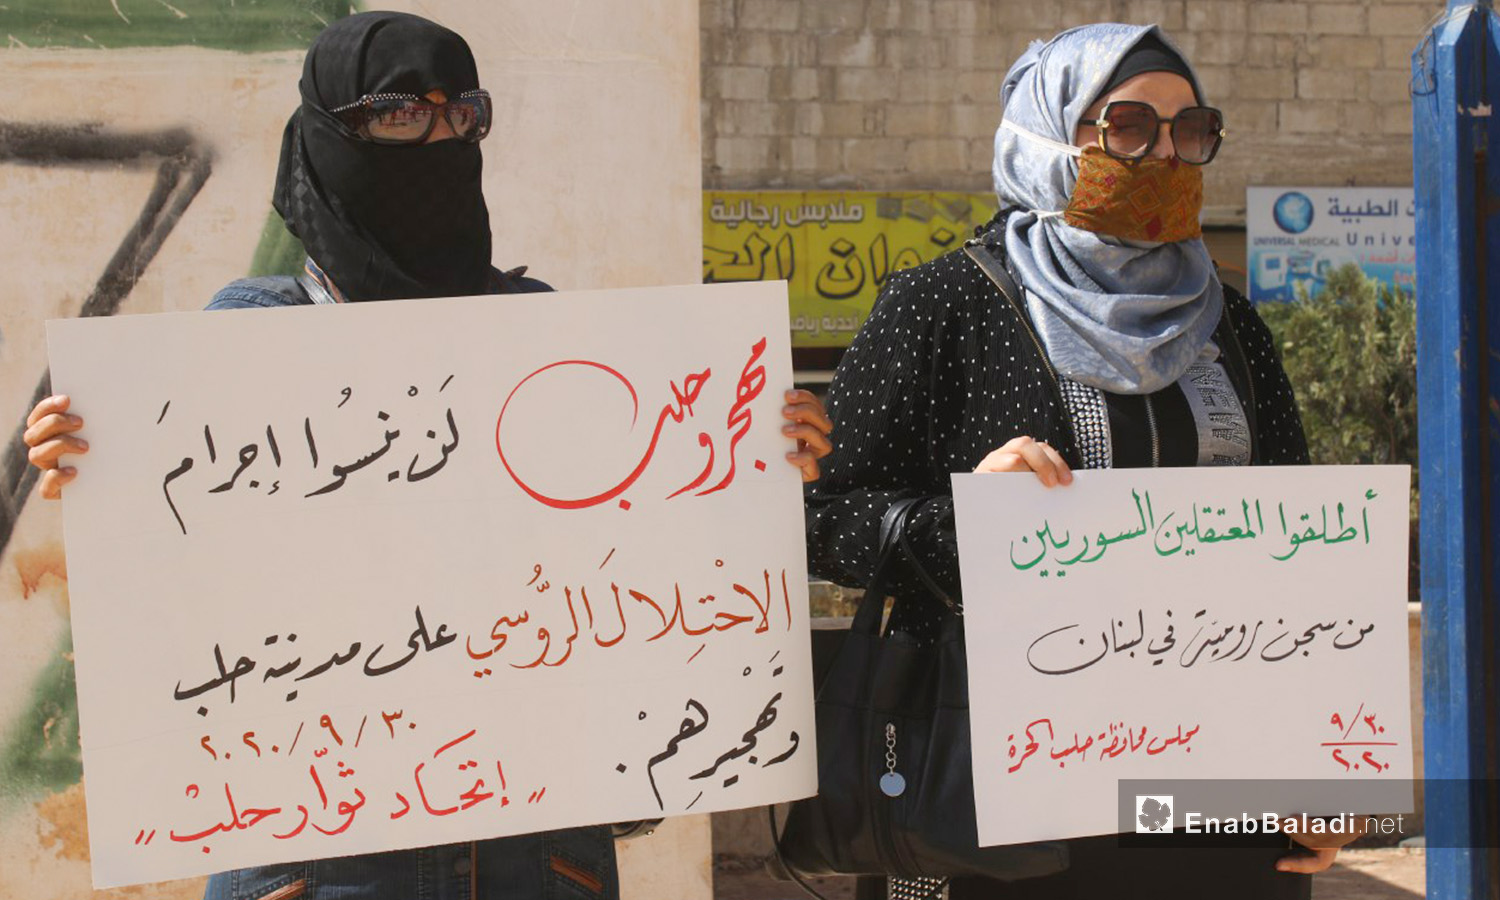 وقفة احتجاجية بمدينة اعزاز في الذكرى الخامسة للتدخل الروسي في سوريا - 30 أيلول 2020 (عنب بلدي / عبد السلام مجعان)